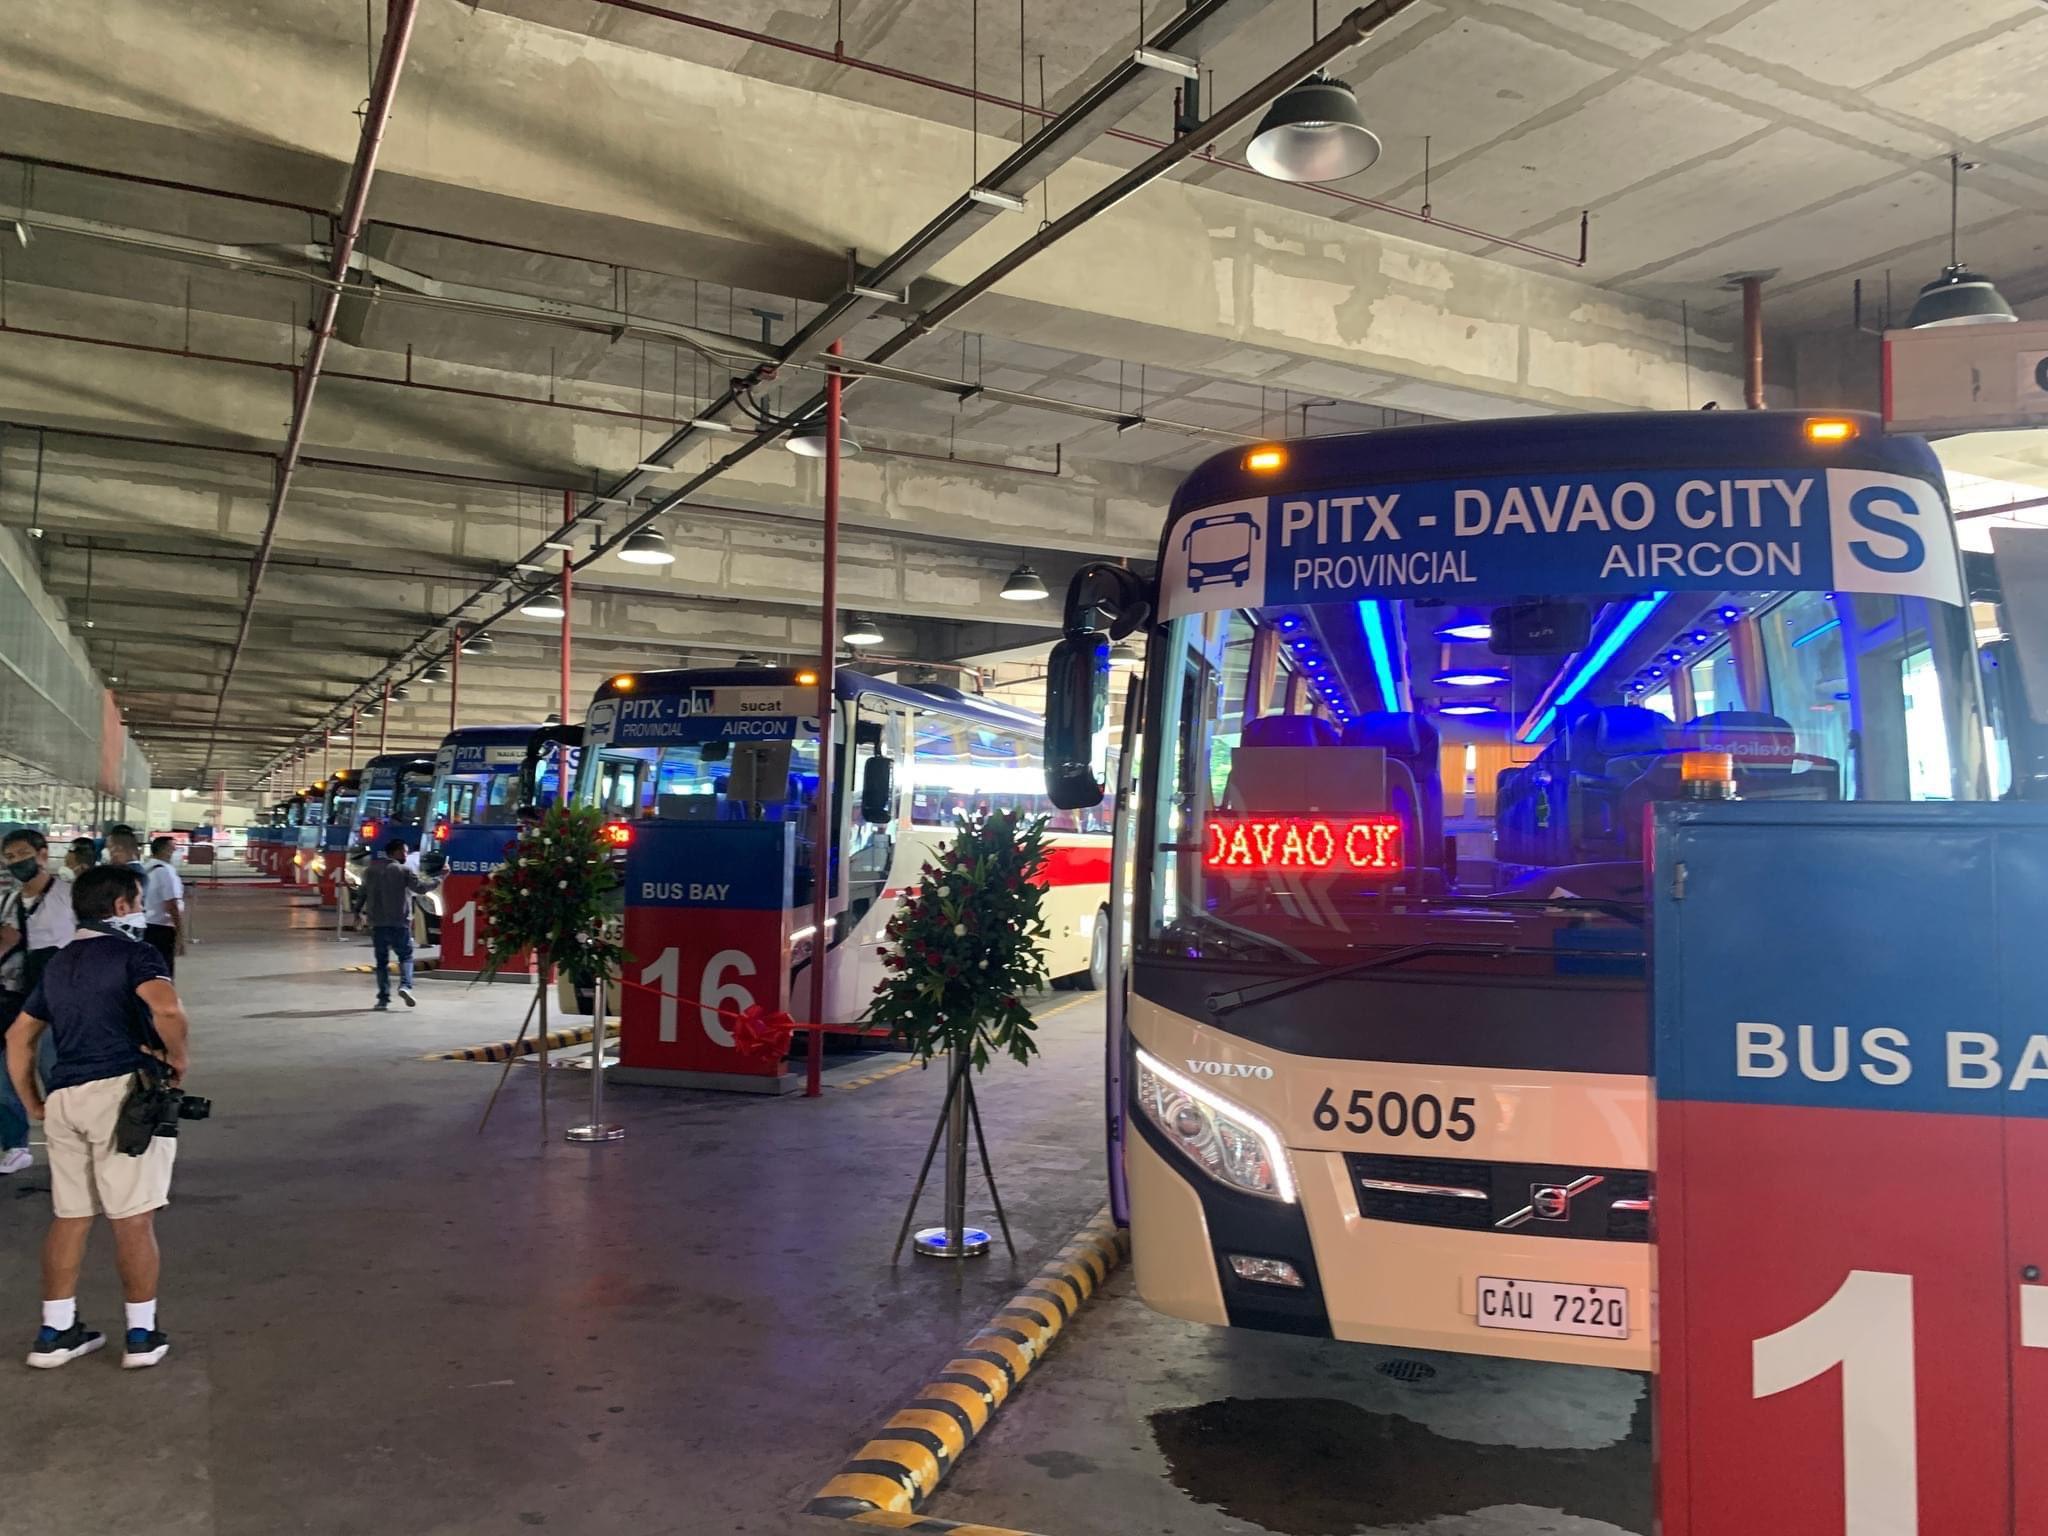 Rute PITX-Davao City diluncurkan, tarif sekali jalan seharga P3.680 Berita GMA Online